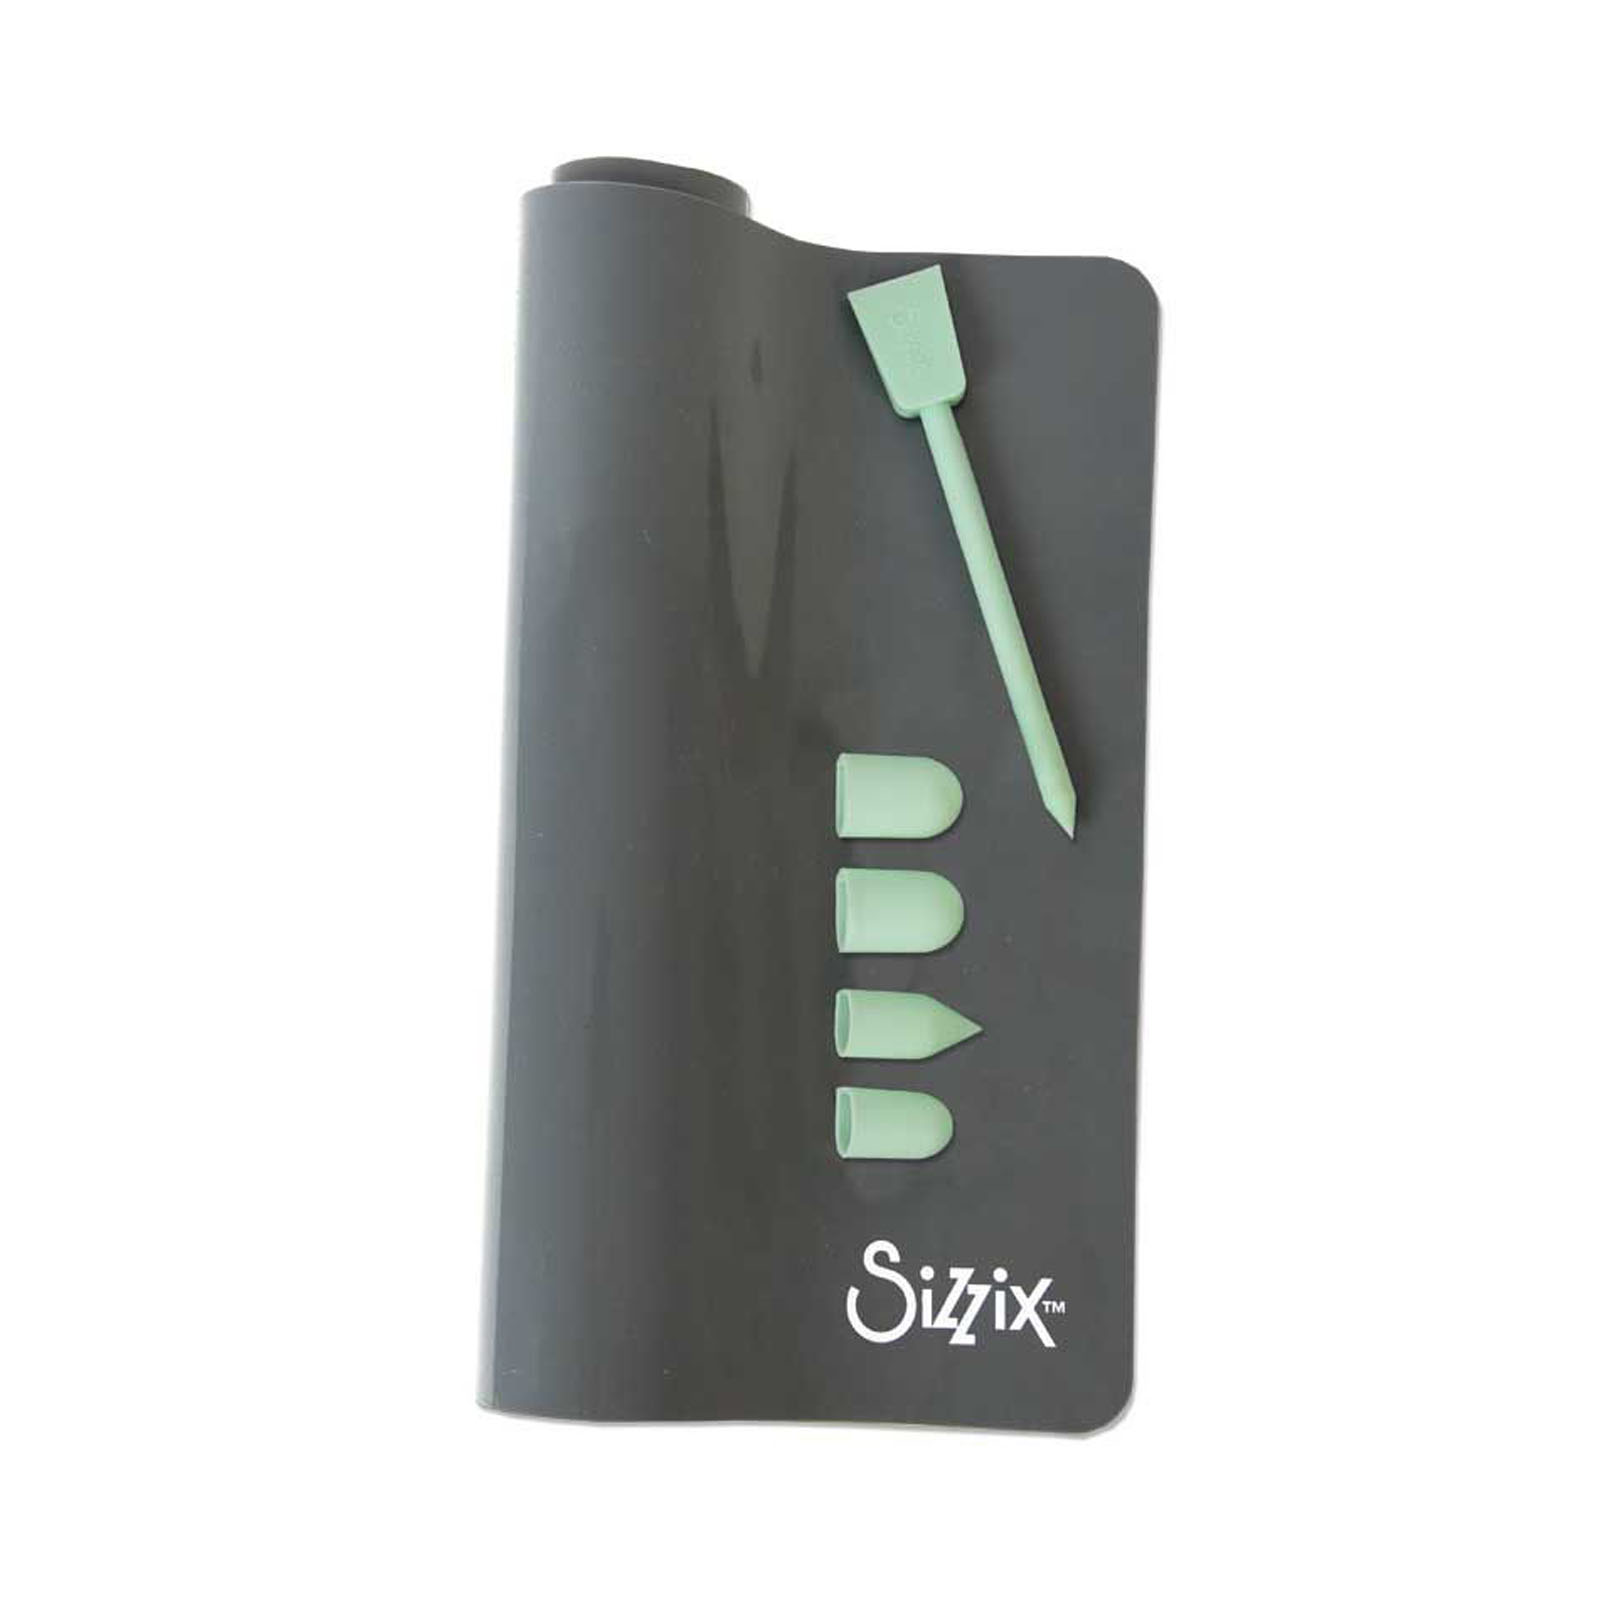 Sizzix • Accessory glue gun accessories